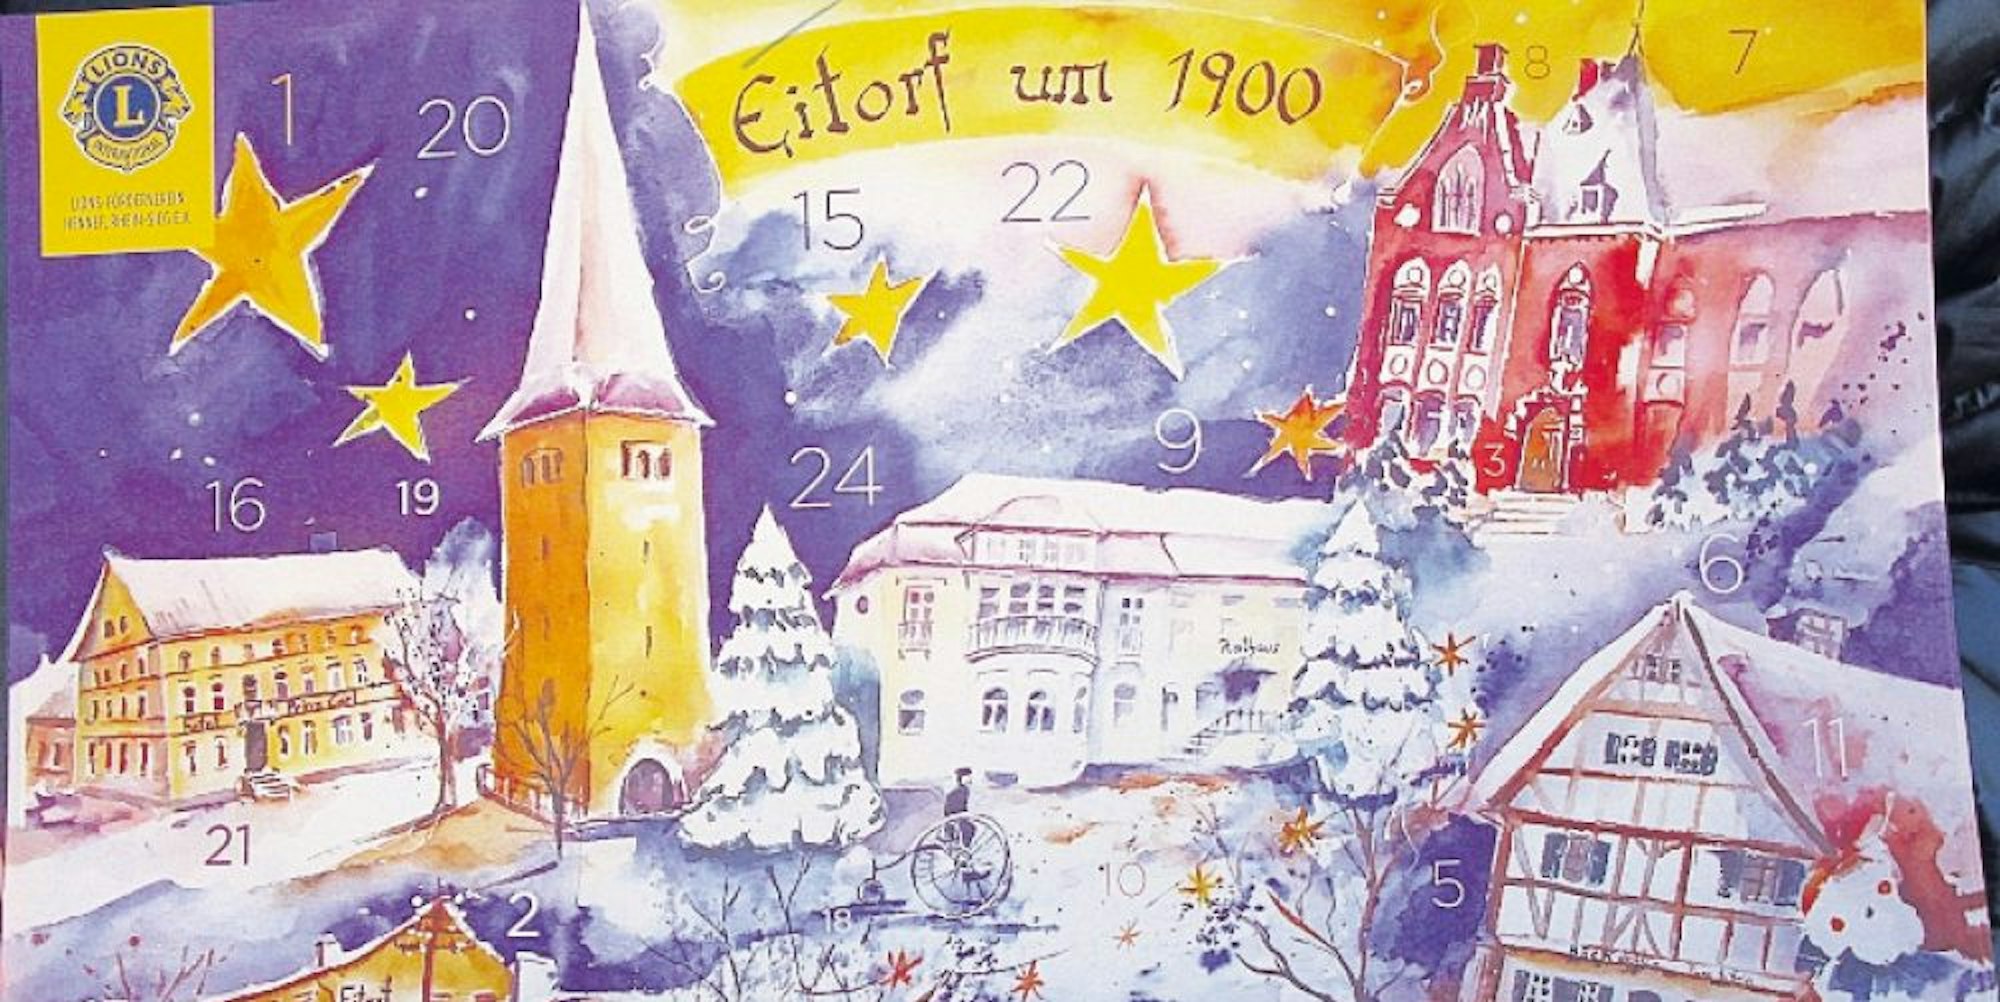 Der alte Kirchturm und andere historische Gebäude schmücken den Lions-Kalender für Eitorf.